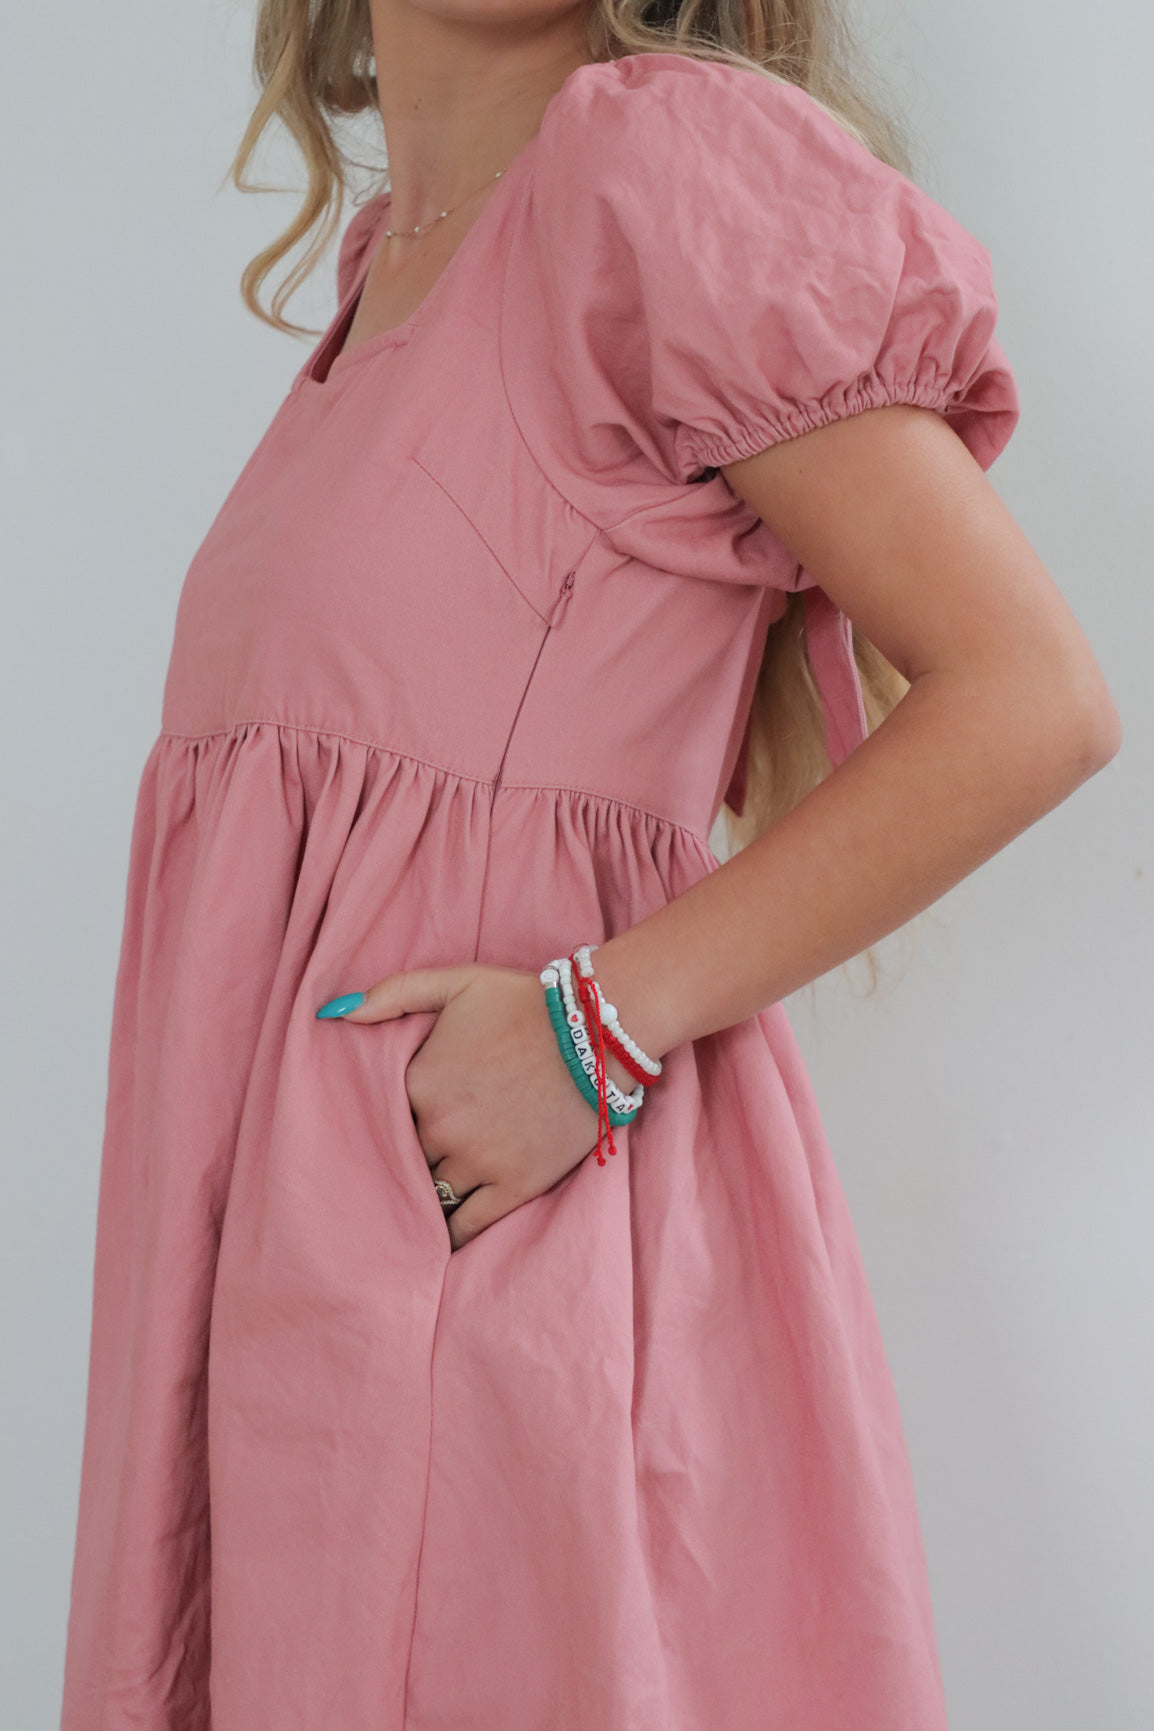 girl wearing pink babydoll dress